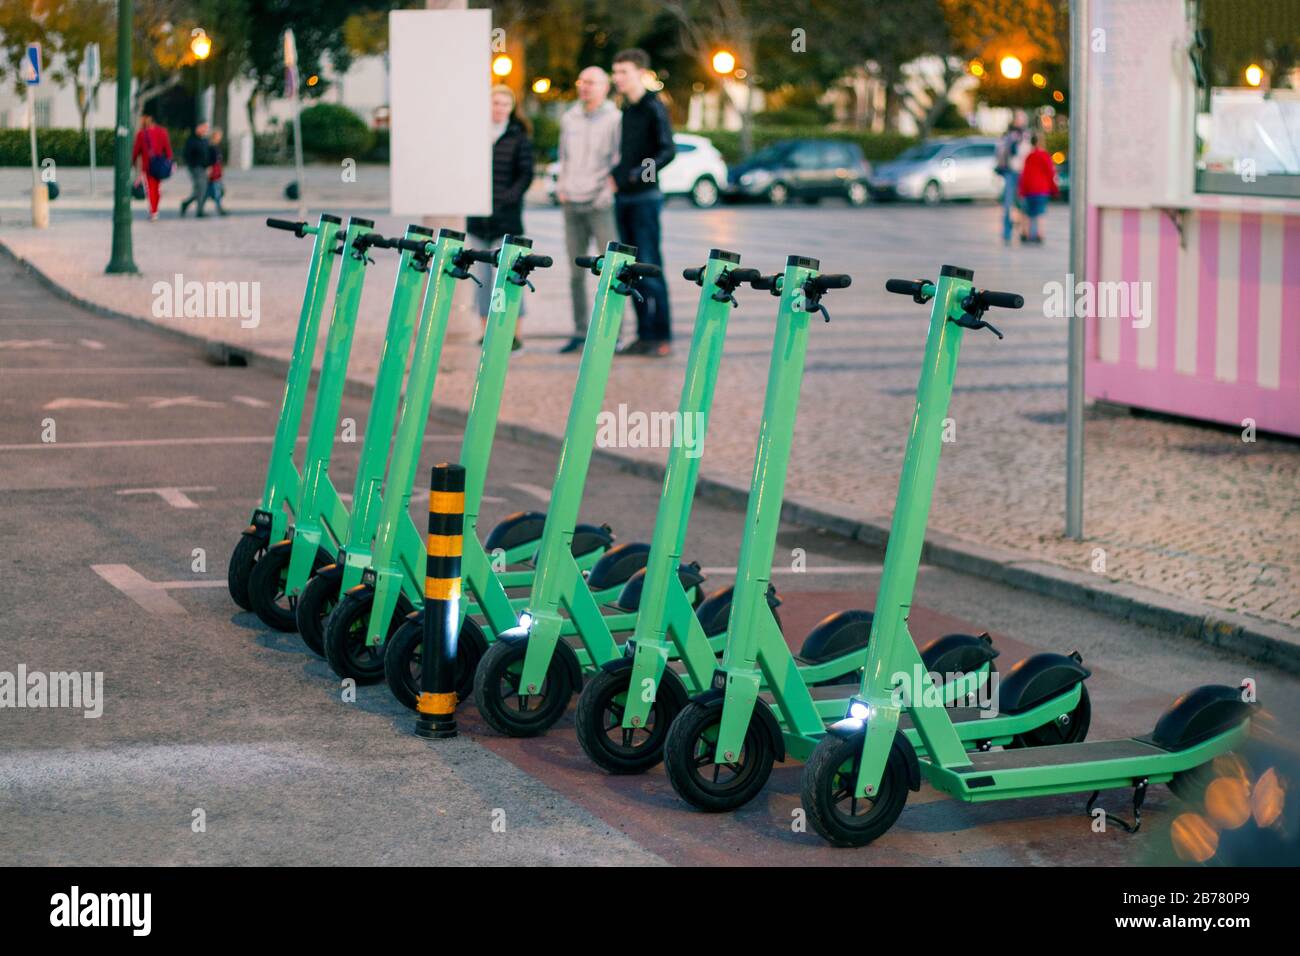 Grüne Elektro-Roller zur Miete auf der Stadt geparkt Stockfotografie - Alamy